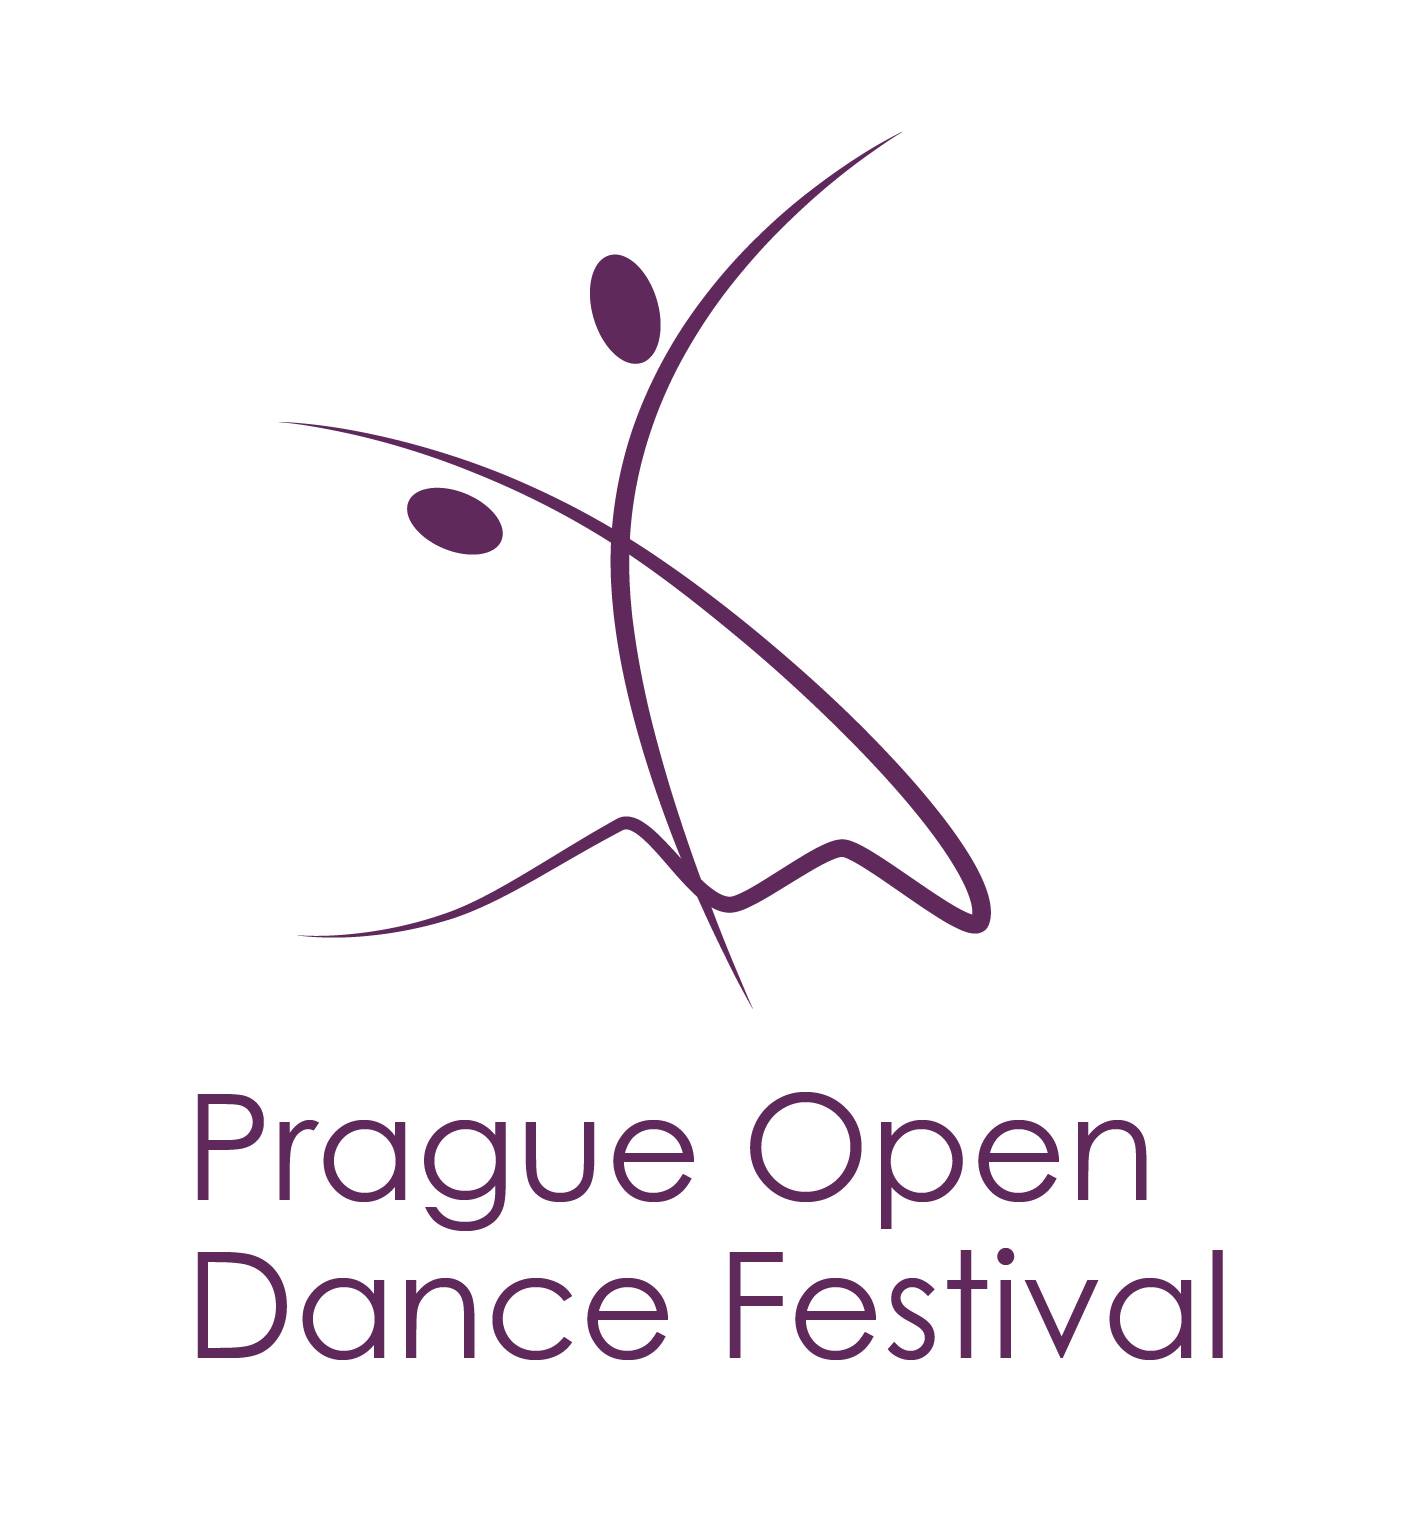 Prague Open Dance Festival - logo